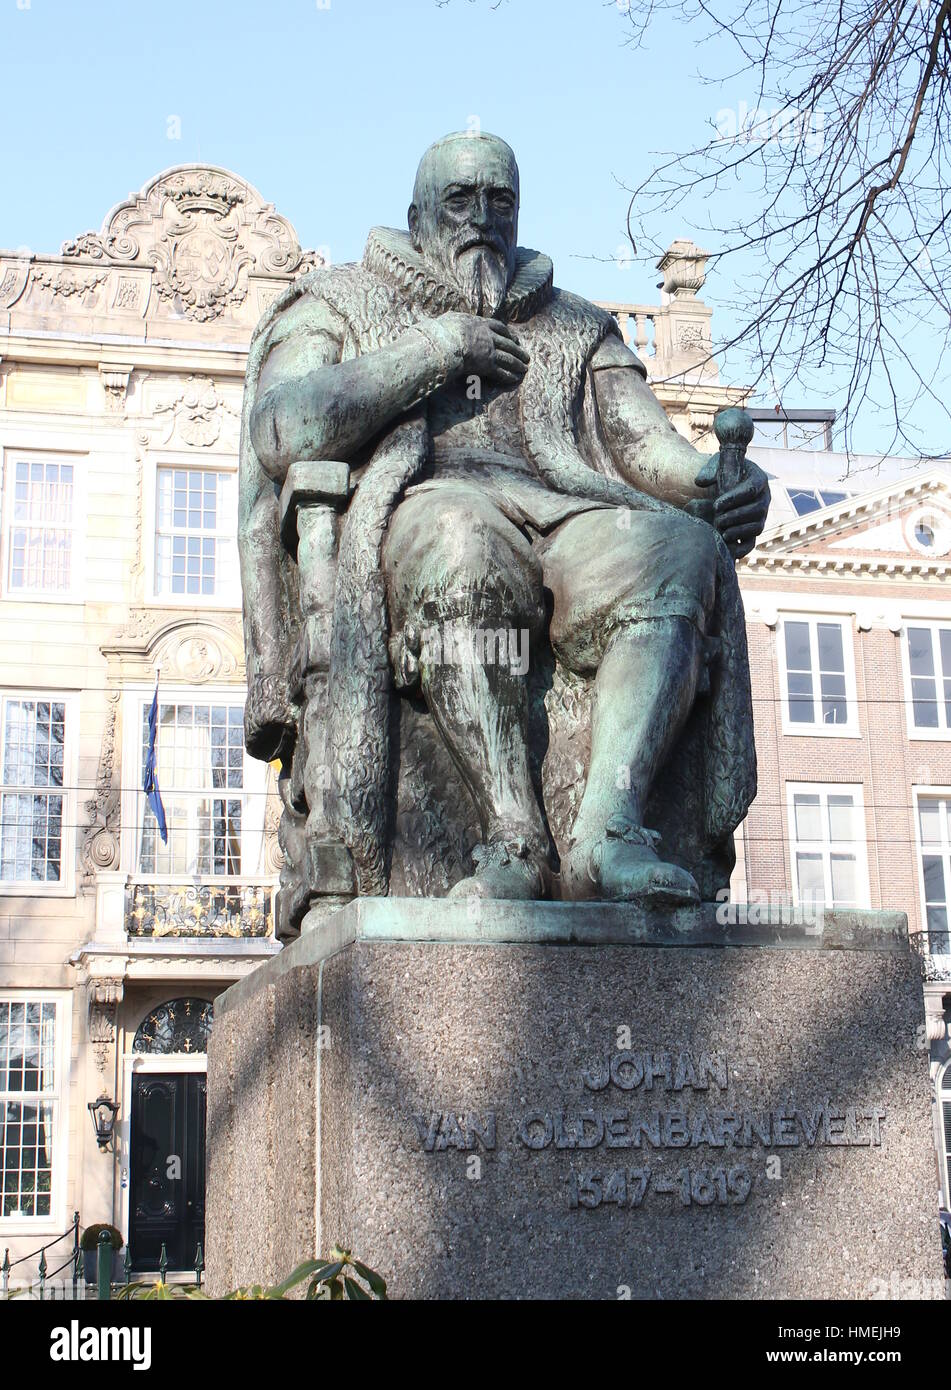 Statua del Dutch Grand Pensionary Johan Van Oldenbarnevelt (1547-1619) nella zona centrale di L'Aia (Den Haag), Paesi Bassi Foto Stock